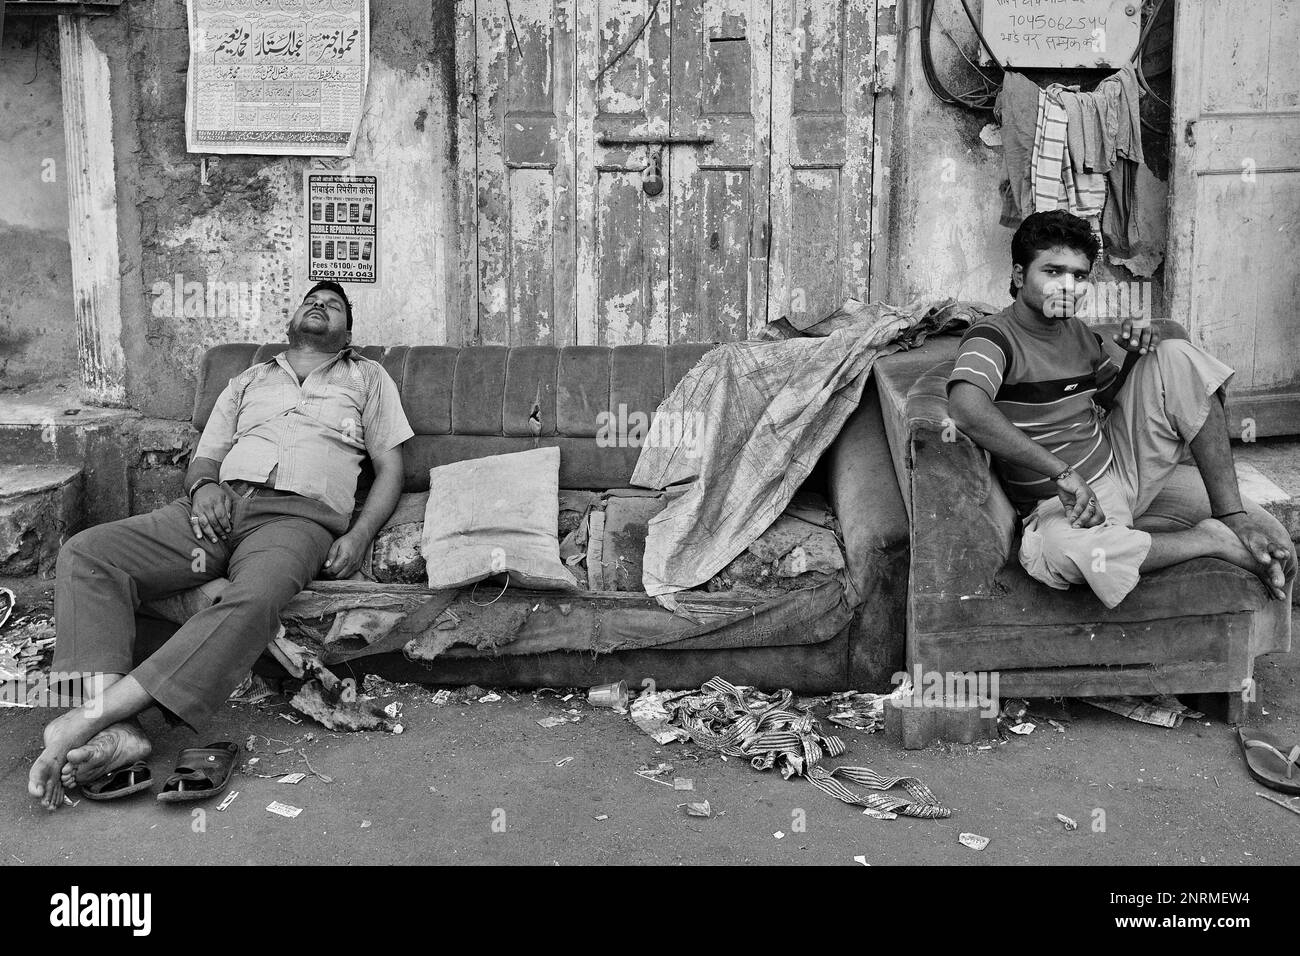 Ein Indianer schläft auf einem ausrangierten, heruntergekommenen Sofa, ein anderer sitzt auf einem Sessel; draußen in Arab Galli, Grant Rd., Mumbai, Indien Stockfoto